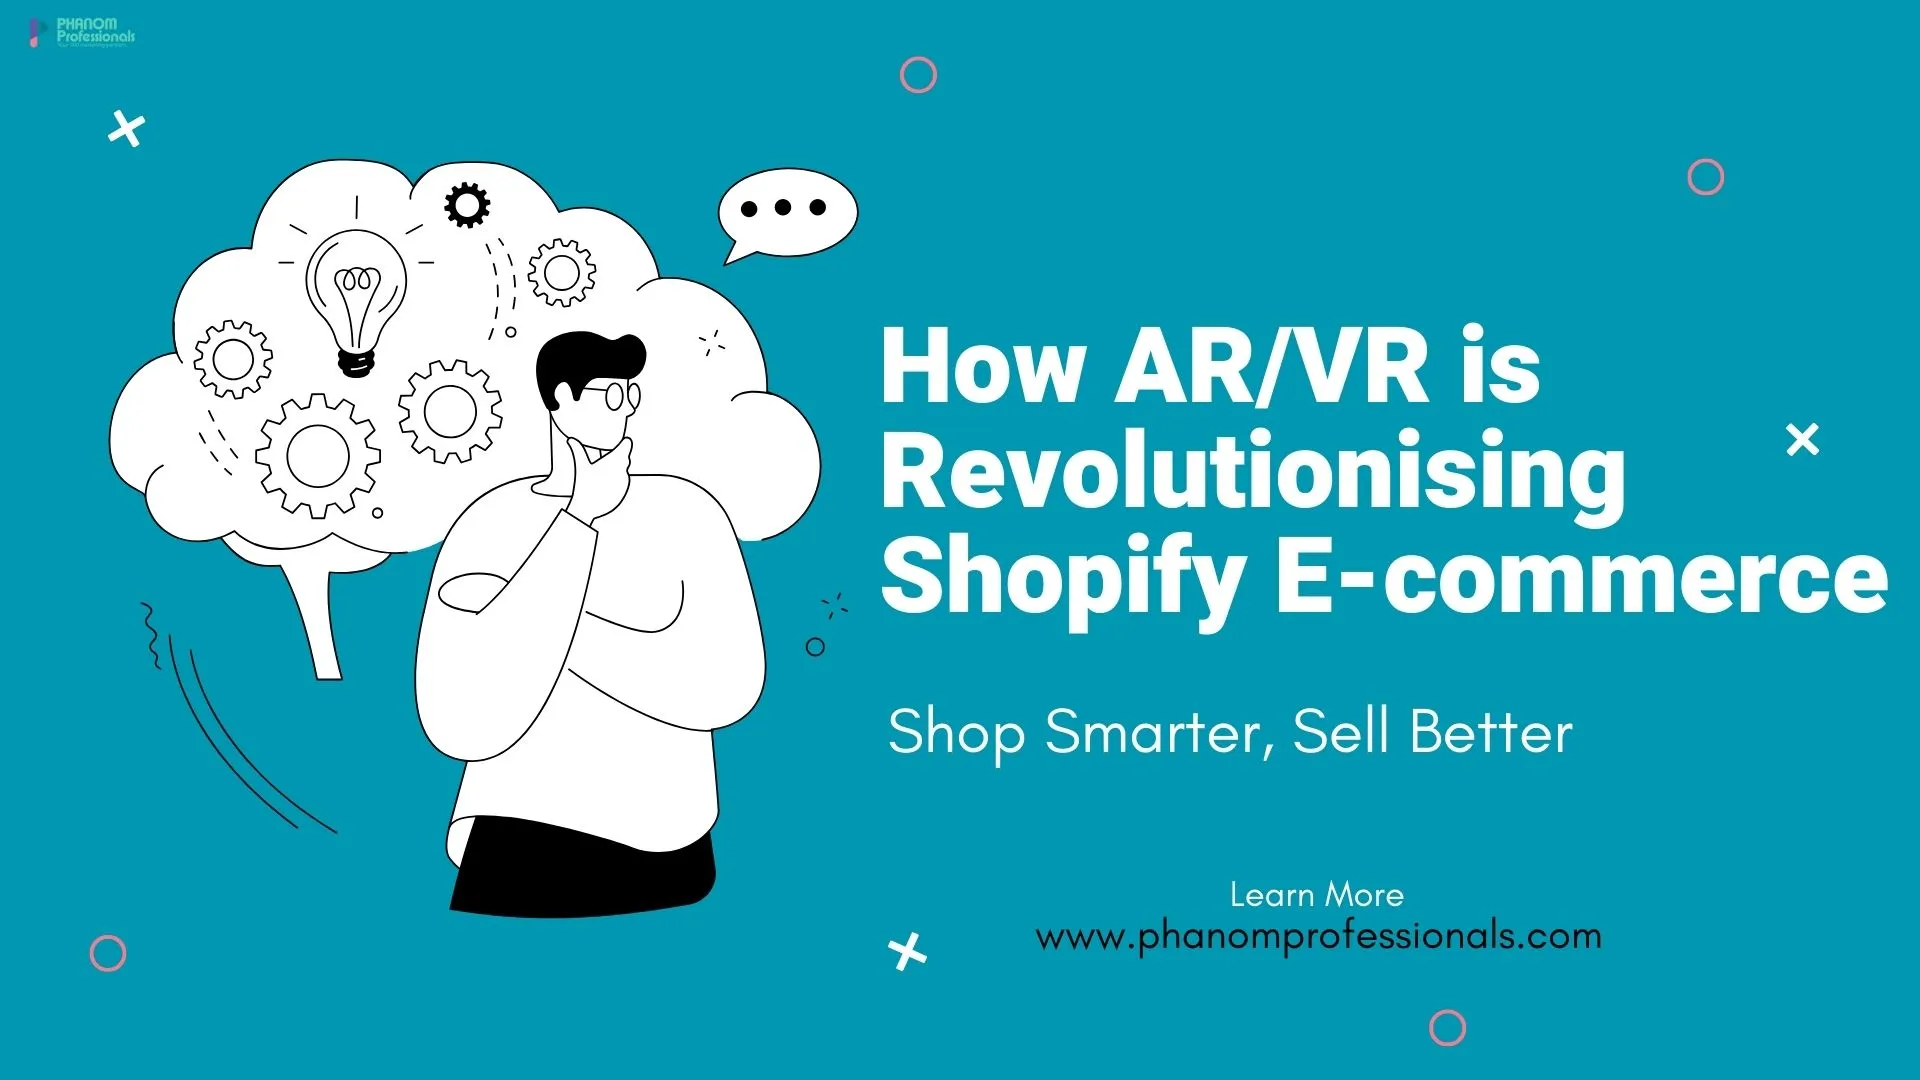 How AR/VR is Revolutionising Shopify E-commerce: Shop Smarter, Sell Better